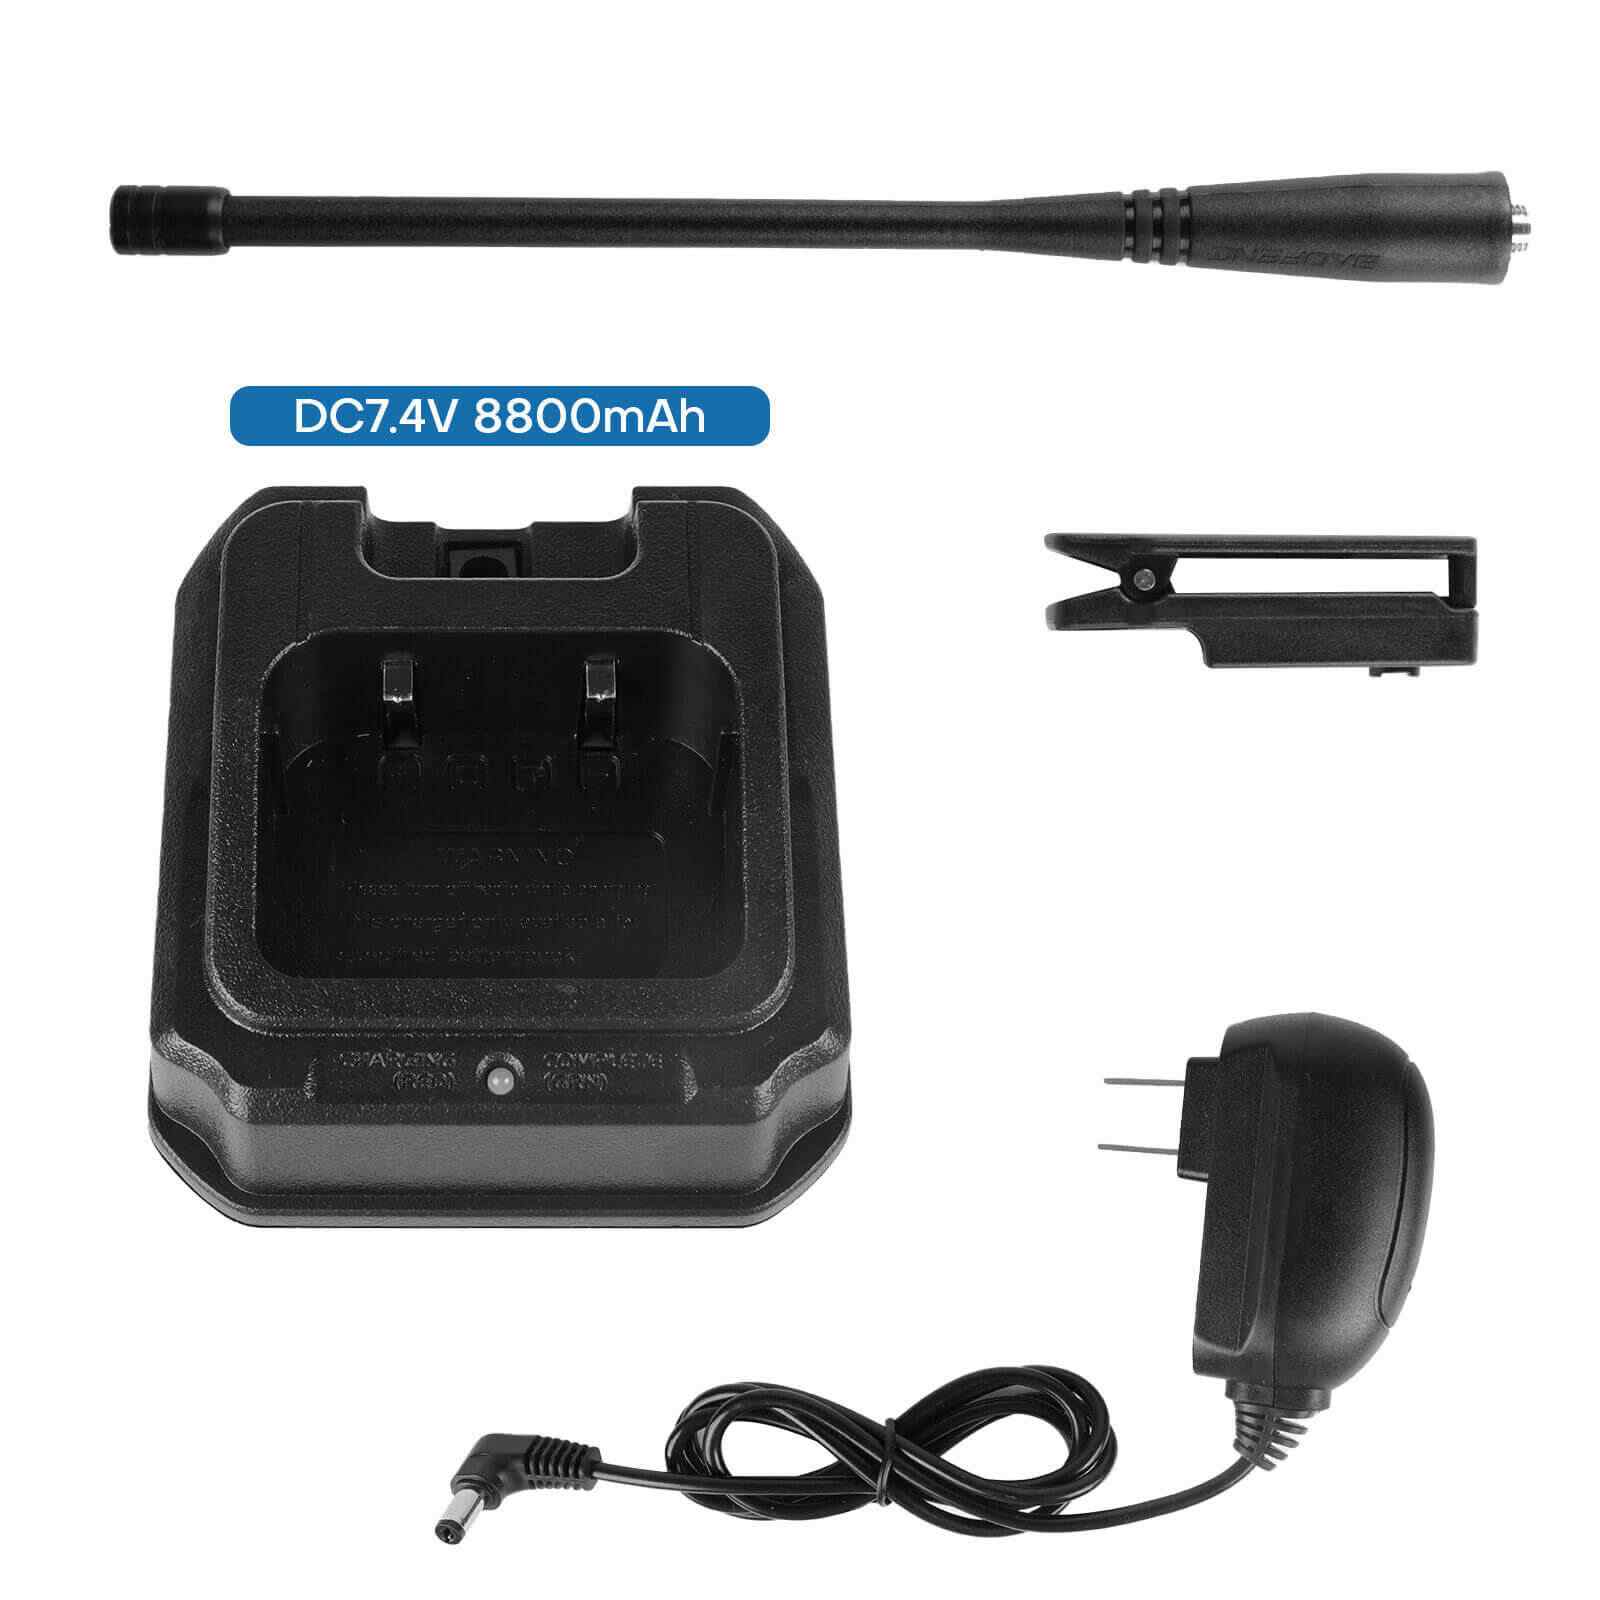 Powerful UV-9R Plus VHF UHF Walkie Talkie Dual-Band Handheld